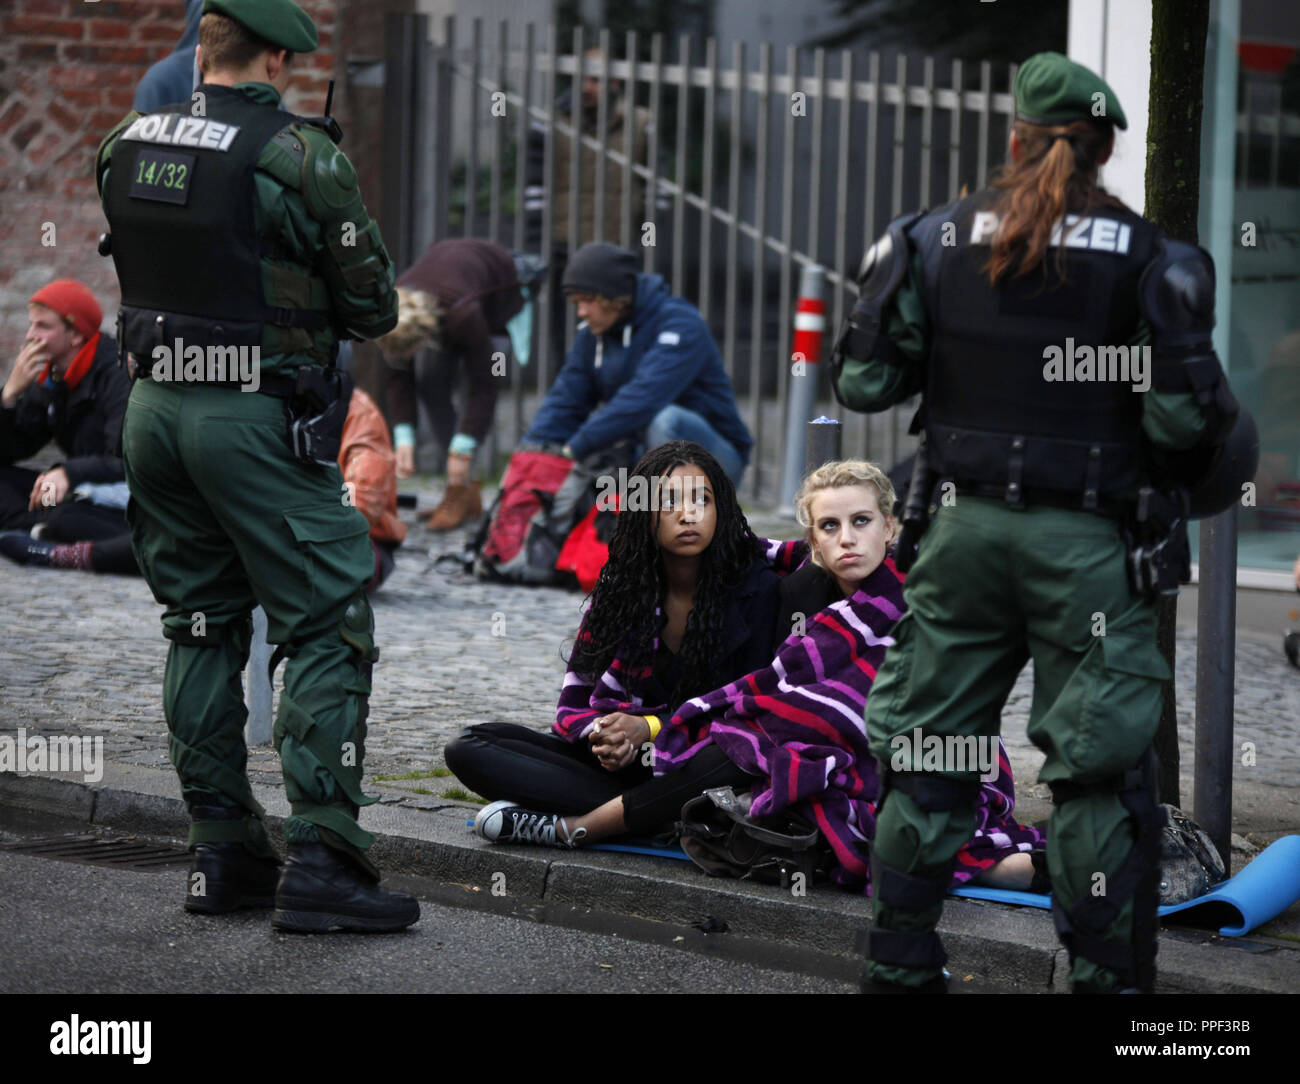 Deux spectateurs assister l'expulsion du camp par la police. Les réfugiés ont fait une grève de la faim il y a 8 jours au Rindermarkt à Munich pour démontrer pour de meilleures conditions de vie et de traitement. Banque D'Images